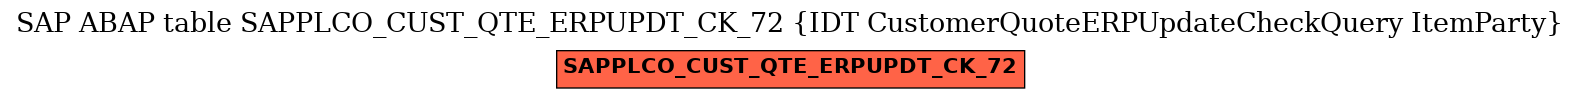 E-R Diagram for table SAPPLCO_CUST_QTE_ERPUPDT_CK_72 (IDT CustomerQuoteERPUpdateCheckQuery ItemParty)